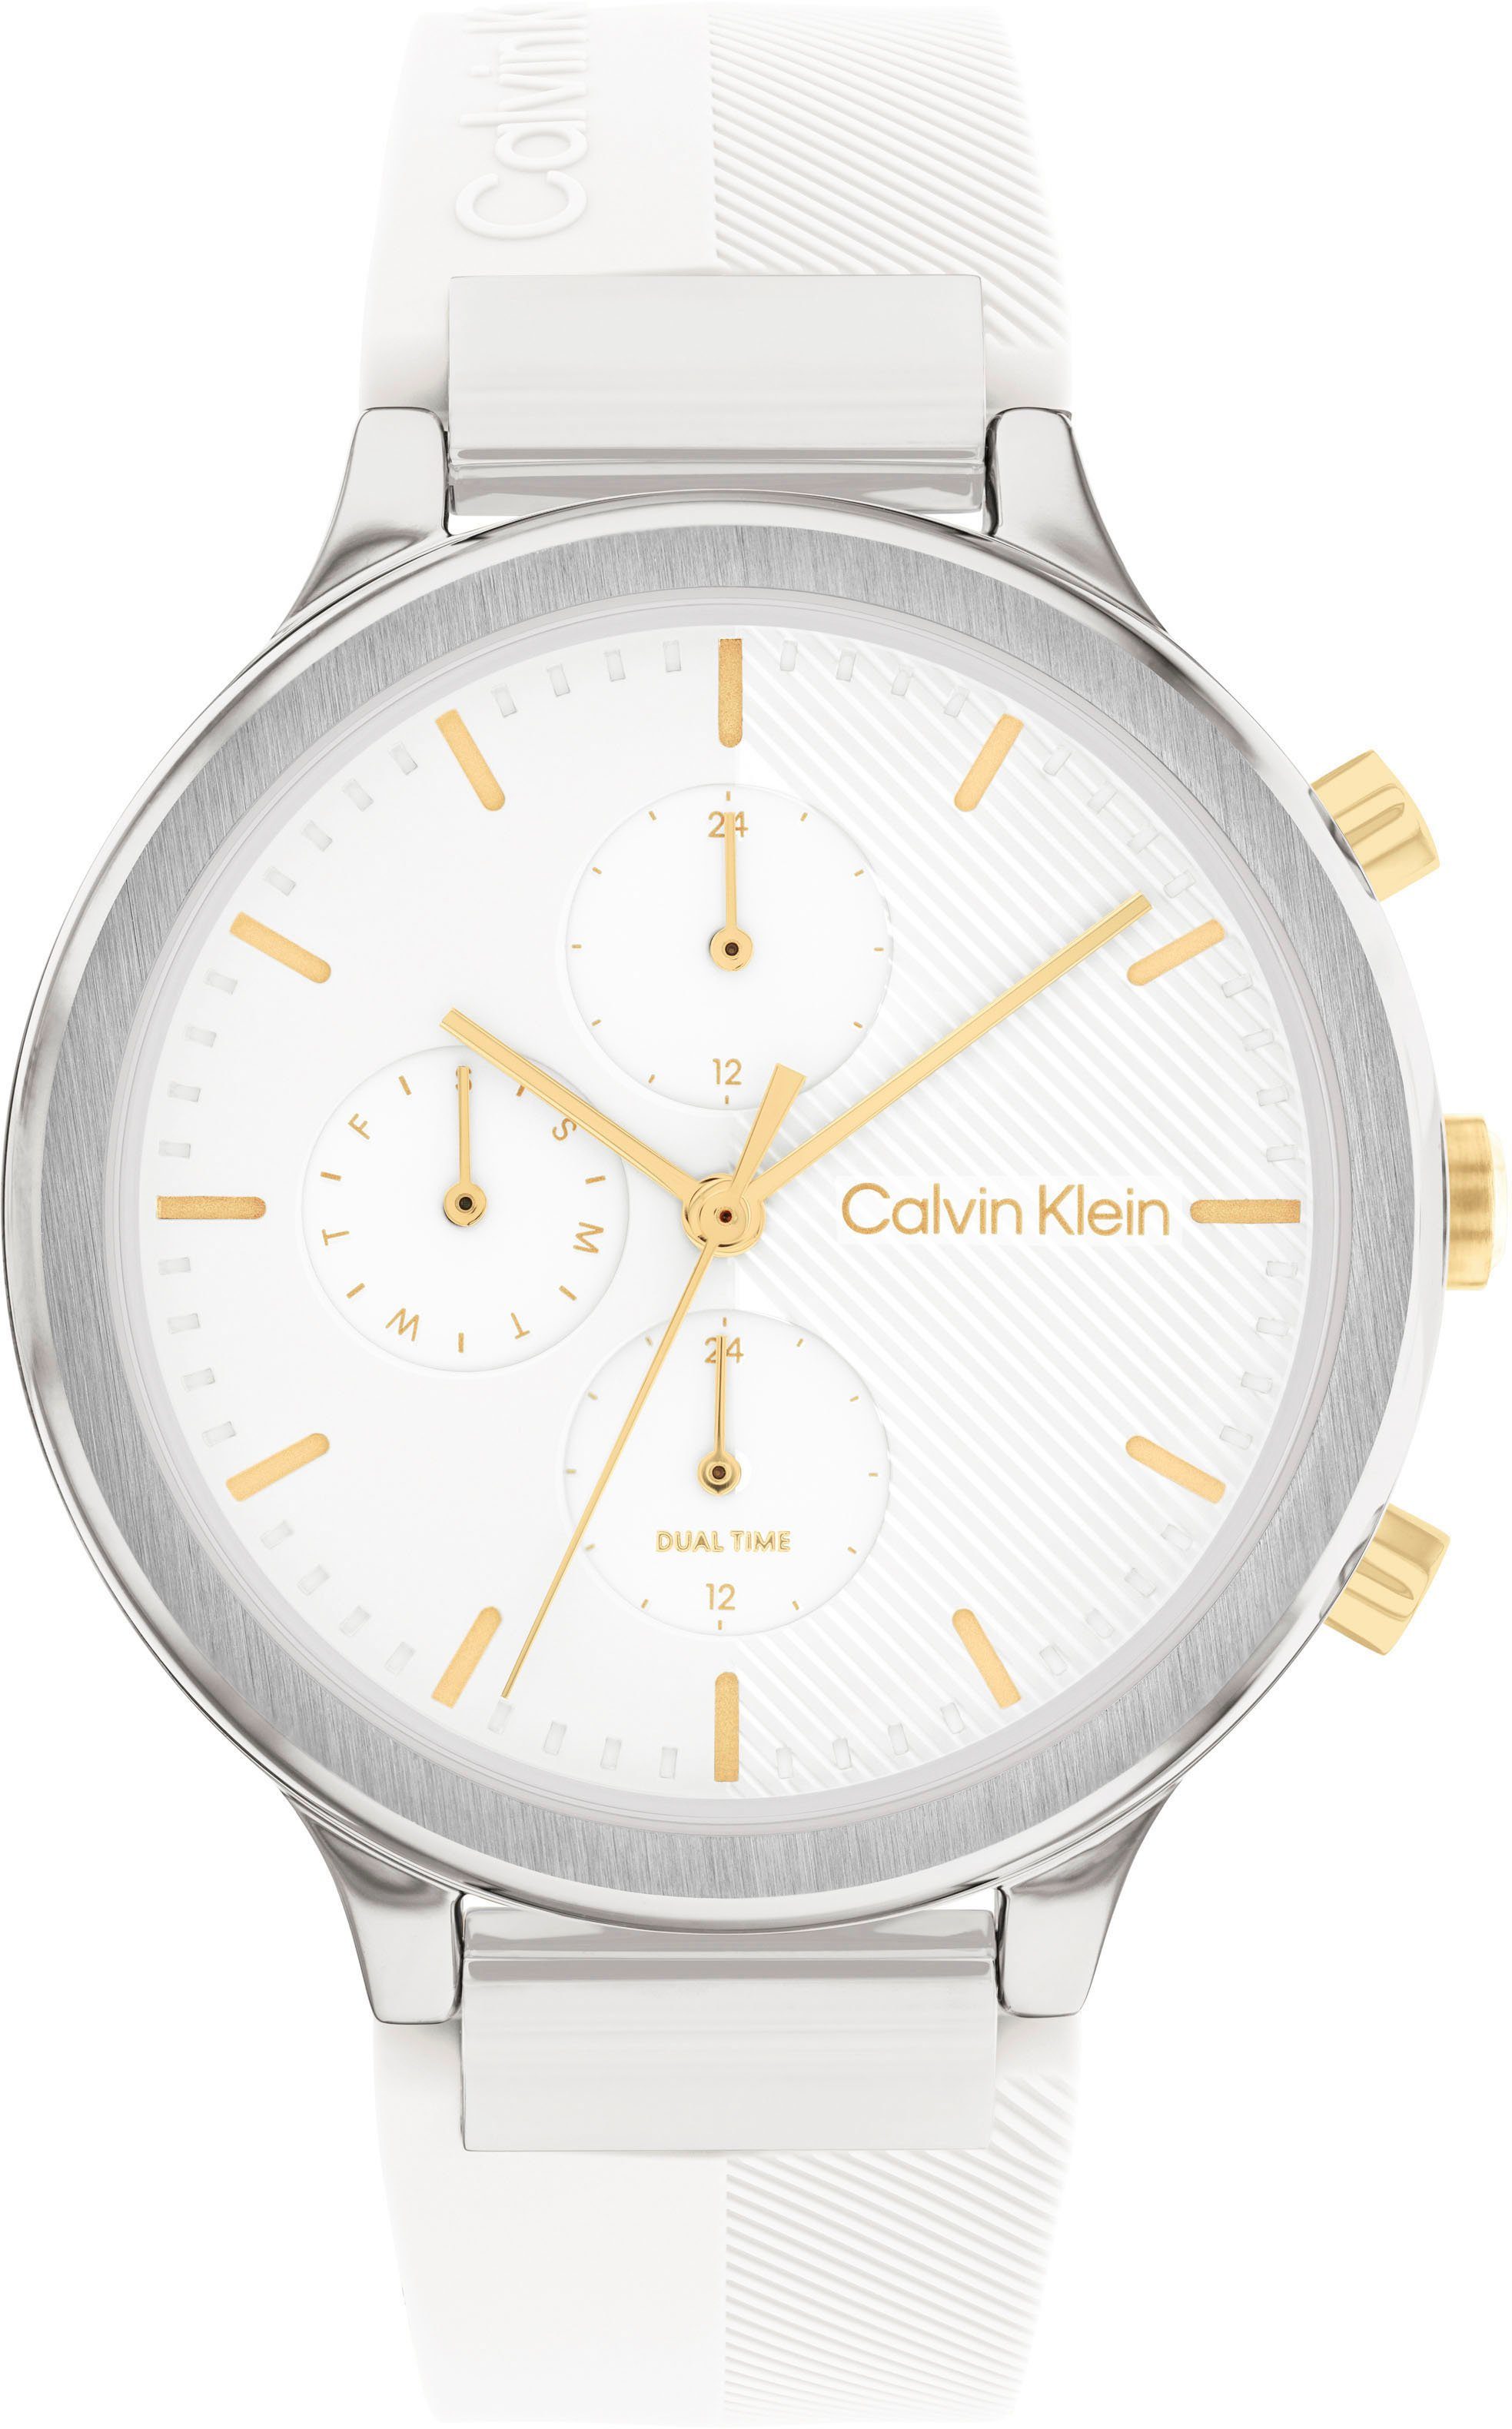 Calvin Klein Multifunktionsuhr SPORT, 25200244, Quarzuhr, Armbanduhr, Damenuhr, Datum, 12/24-Stunden-Anzeige